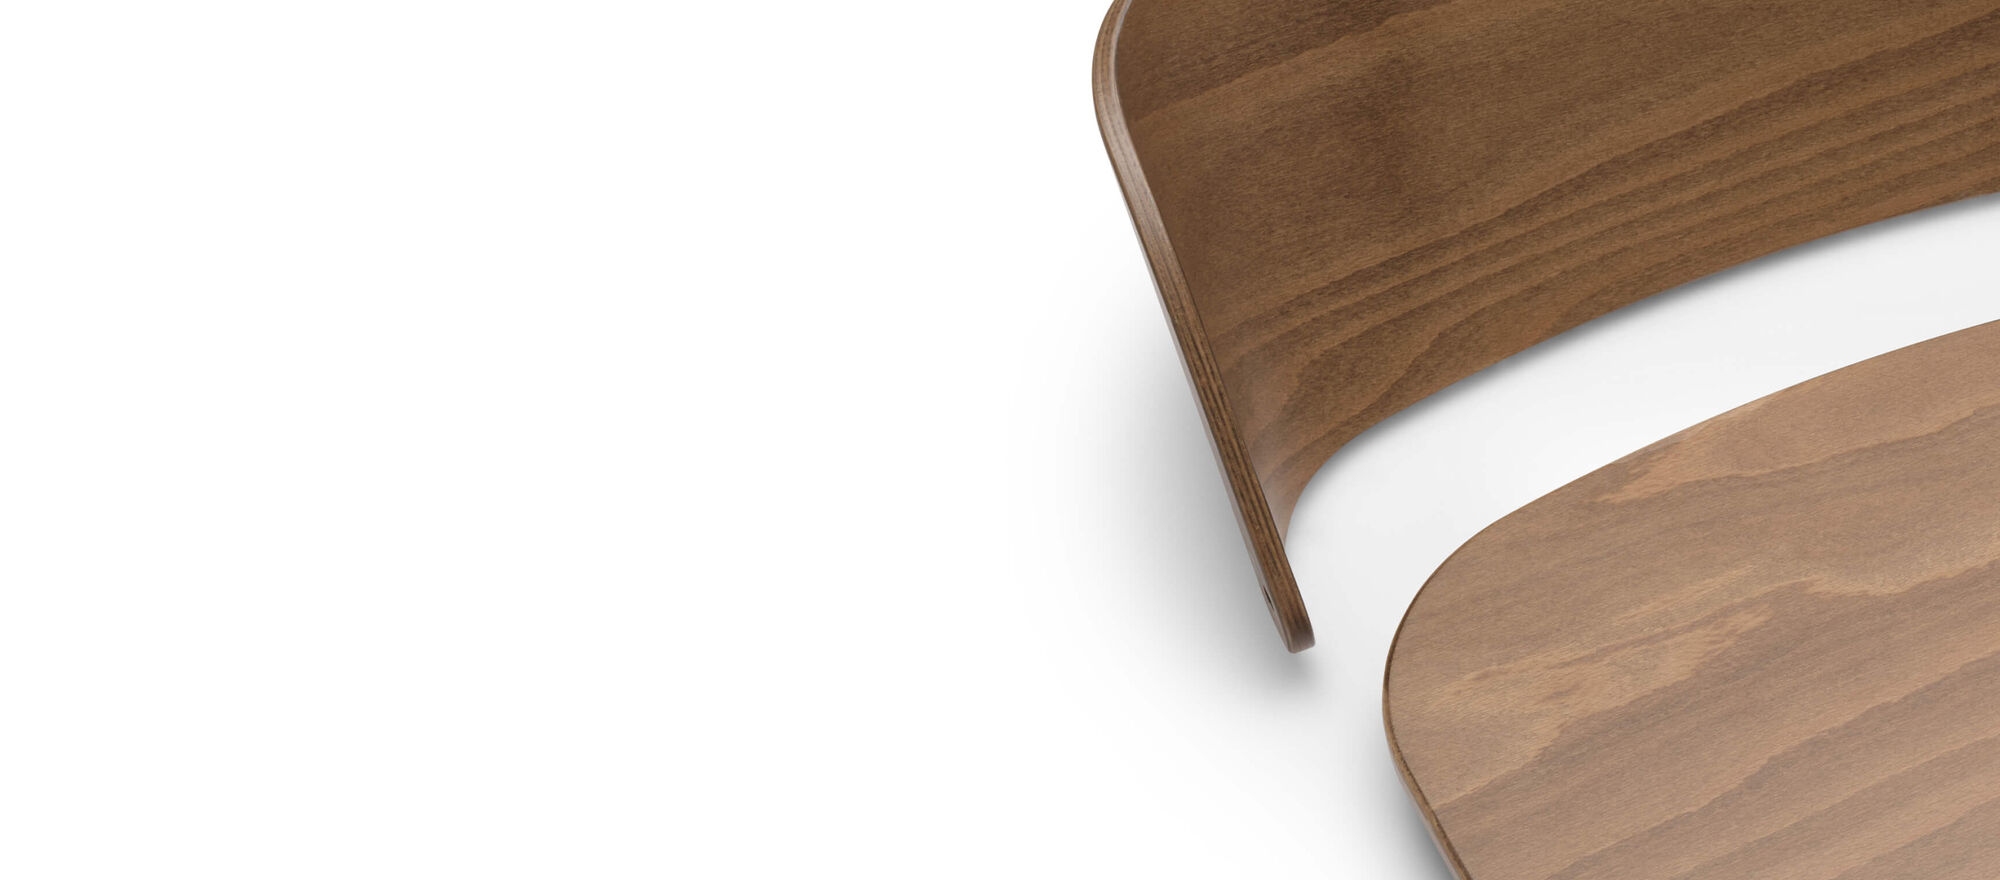 Eine abnehmbare Rückenlehne und Sitzfläche des Bugaboo Giraffenstuhls aus Naturholz mit einer polierten, hochwertigen Oberfläche.